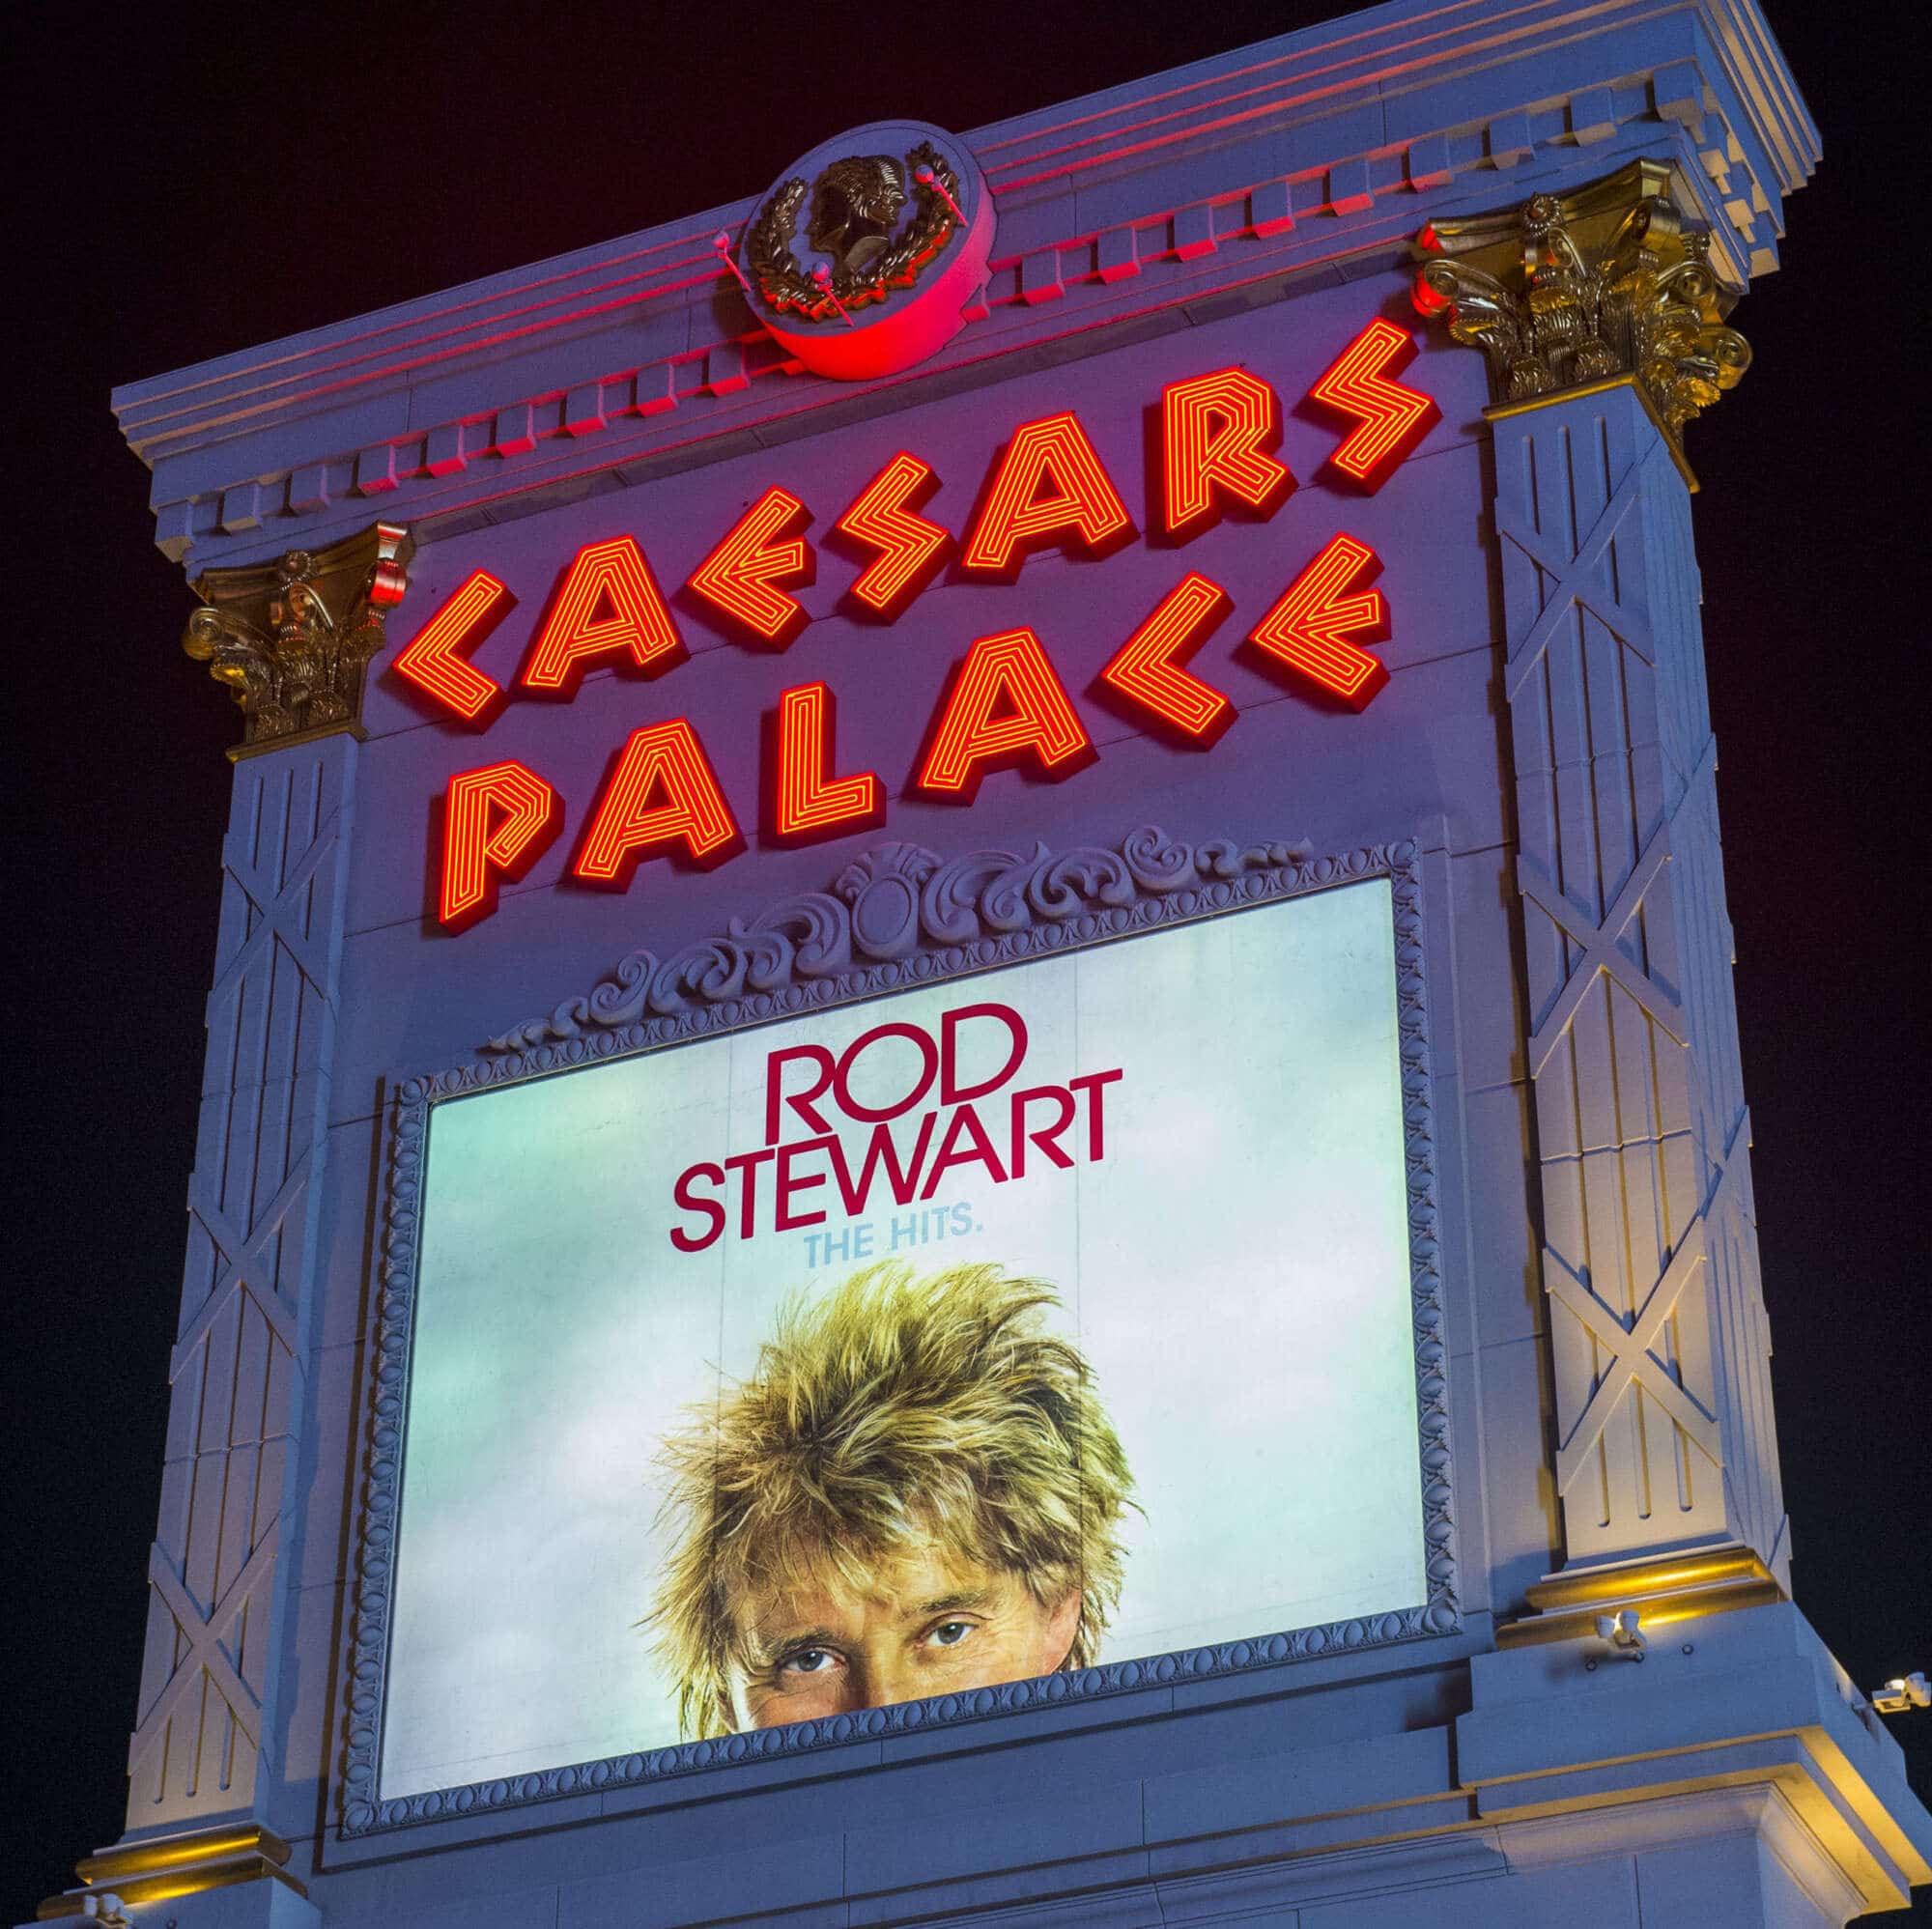 Rod Stewart sign at Caesars Palace